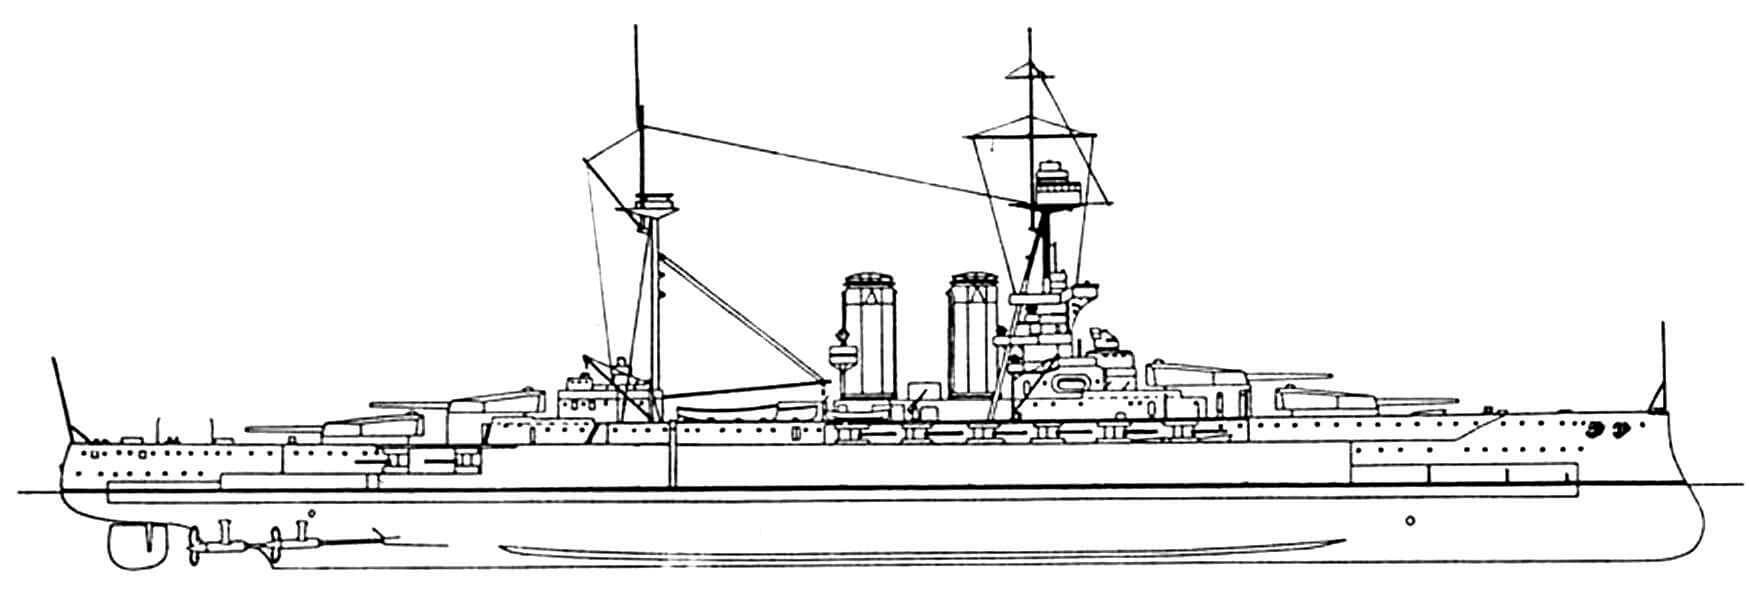 173.Линейный корабль «КУИН ЭЛИЗАБЕТ», Англия, 1915 г. Заложен в 1912 г., спущен на воду в 1913 г. Водоизмещение нормальное 27 500 т, полное 31 500 т. Длина наибольшая 196,8 м, ширина 27,6 м, осадка 8,8 м. Мощность 4-вальной турбинной установки 56 000 л. с., скорость 23—24 уз. Броня: пояс 330-152 мм, траверзы 152-102 мм, барбеты 254-1 02 мм, башни до 330 мм, рубка 280 мм, палубы в сумме до 95 мм. Вооружение: восемь 381 -мм и шестнадцать 152-мм орудий, две 76-мм зенитные и четыре 47-мм салютные пушки, 4 торпедных аппарата. Всего построено 5 единиц: «Куин Элизабет», «Уорспайт», «Бархэм» (1915 г.), «Вэлиент» и «Малайя» (1916 г.). Все корабли, кроме головного, несли по четырнадцать 152-мм орудий.